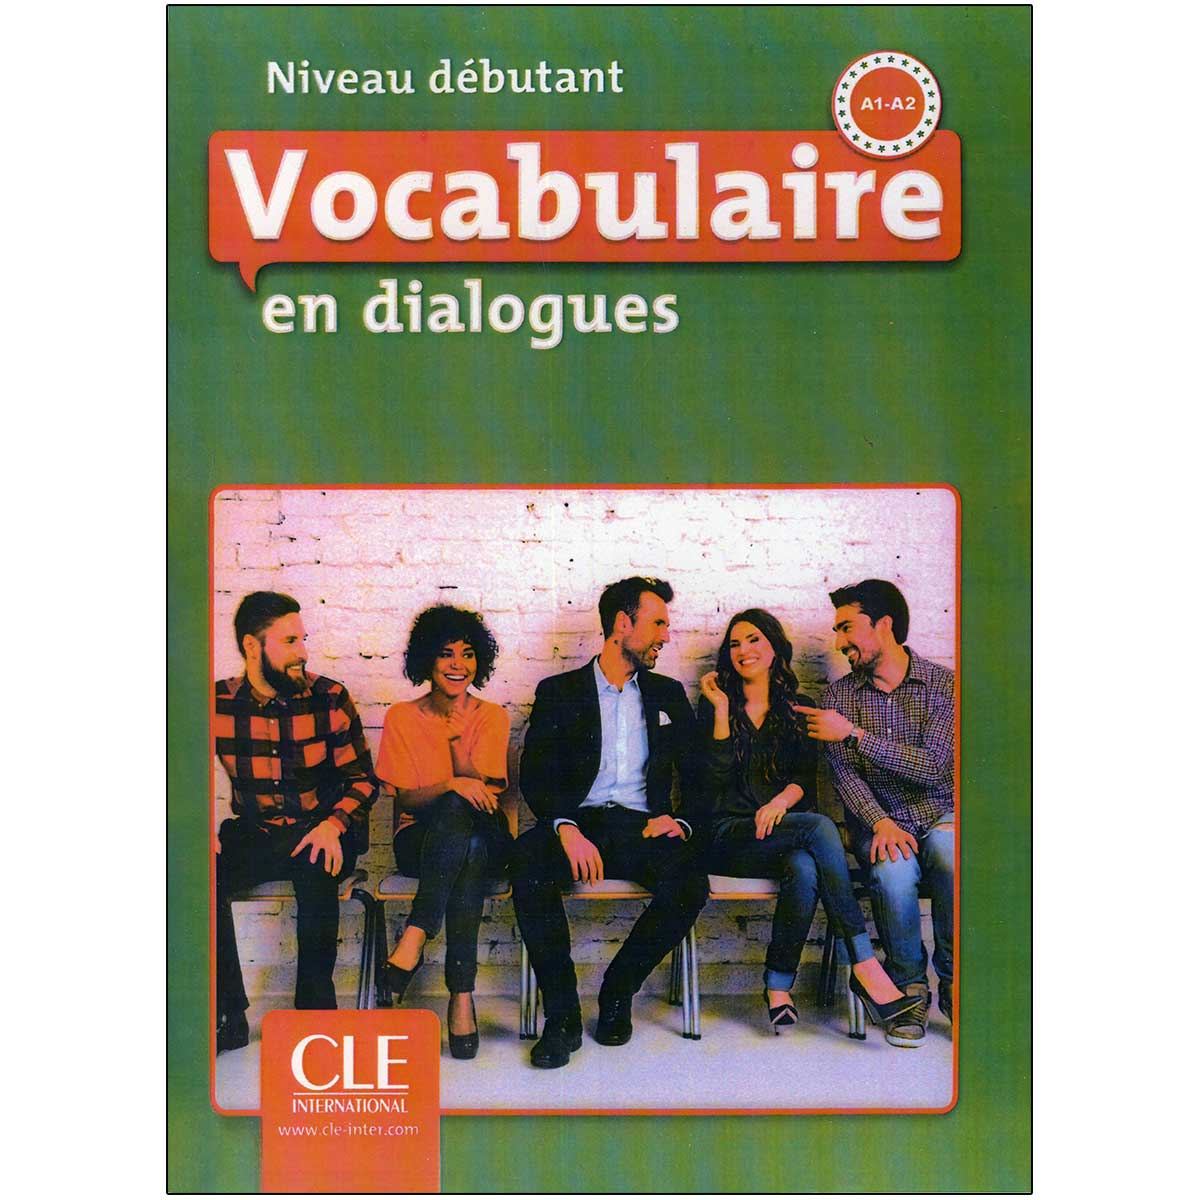 خرید کتاب Vocabulaire en dialogues Niveau debutant Second Edition تا 50%تخفیف ❤️ – زبانمهر